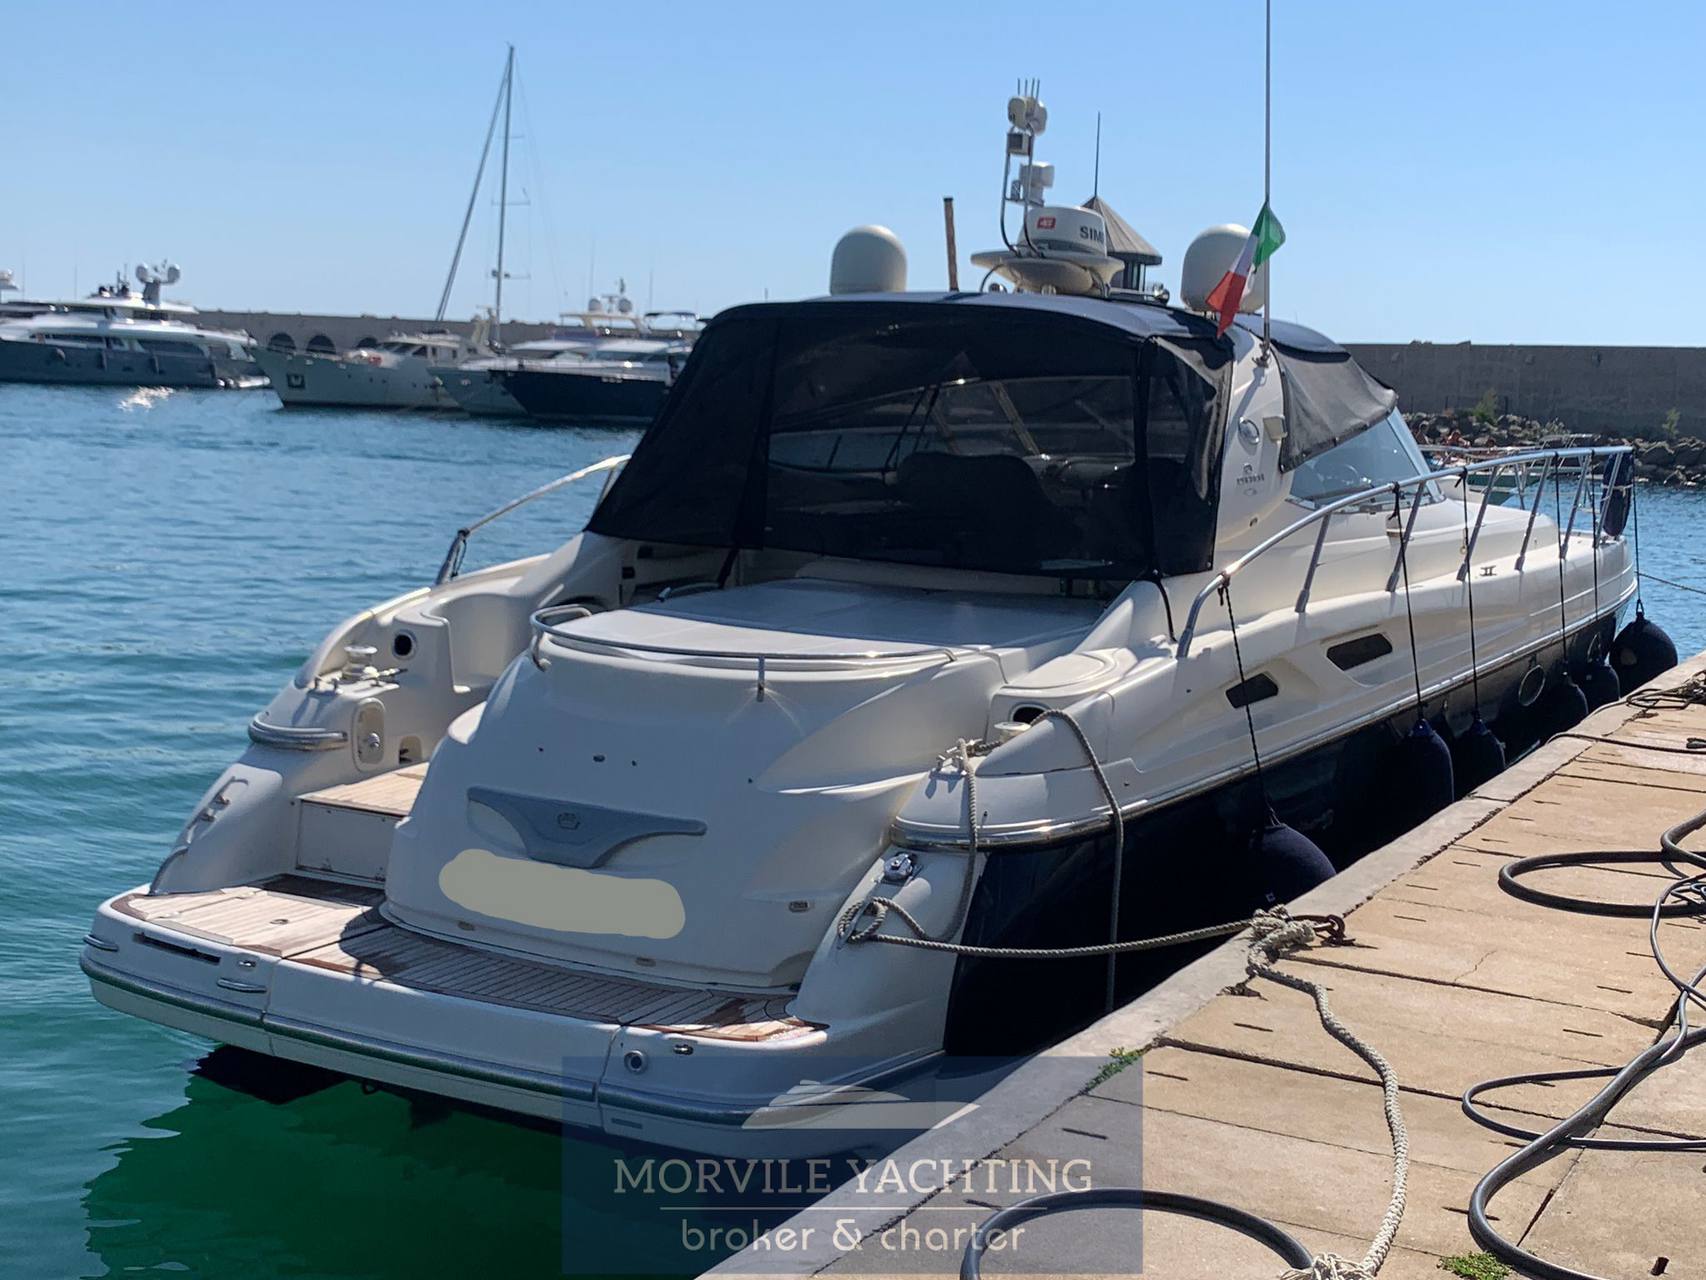 cranchi Mediterranée 50 Motor boat used for sale